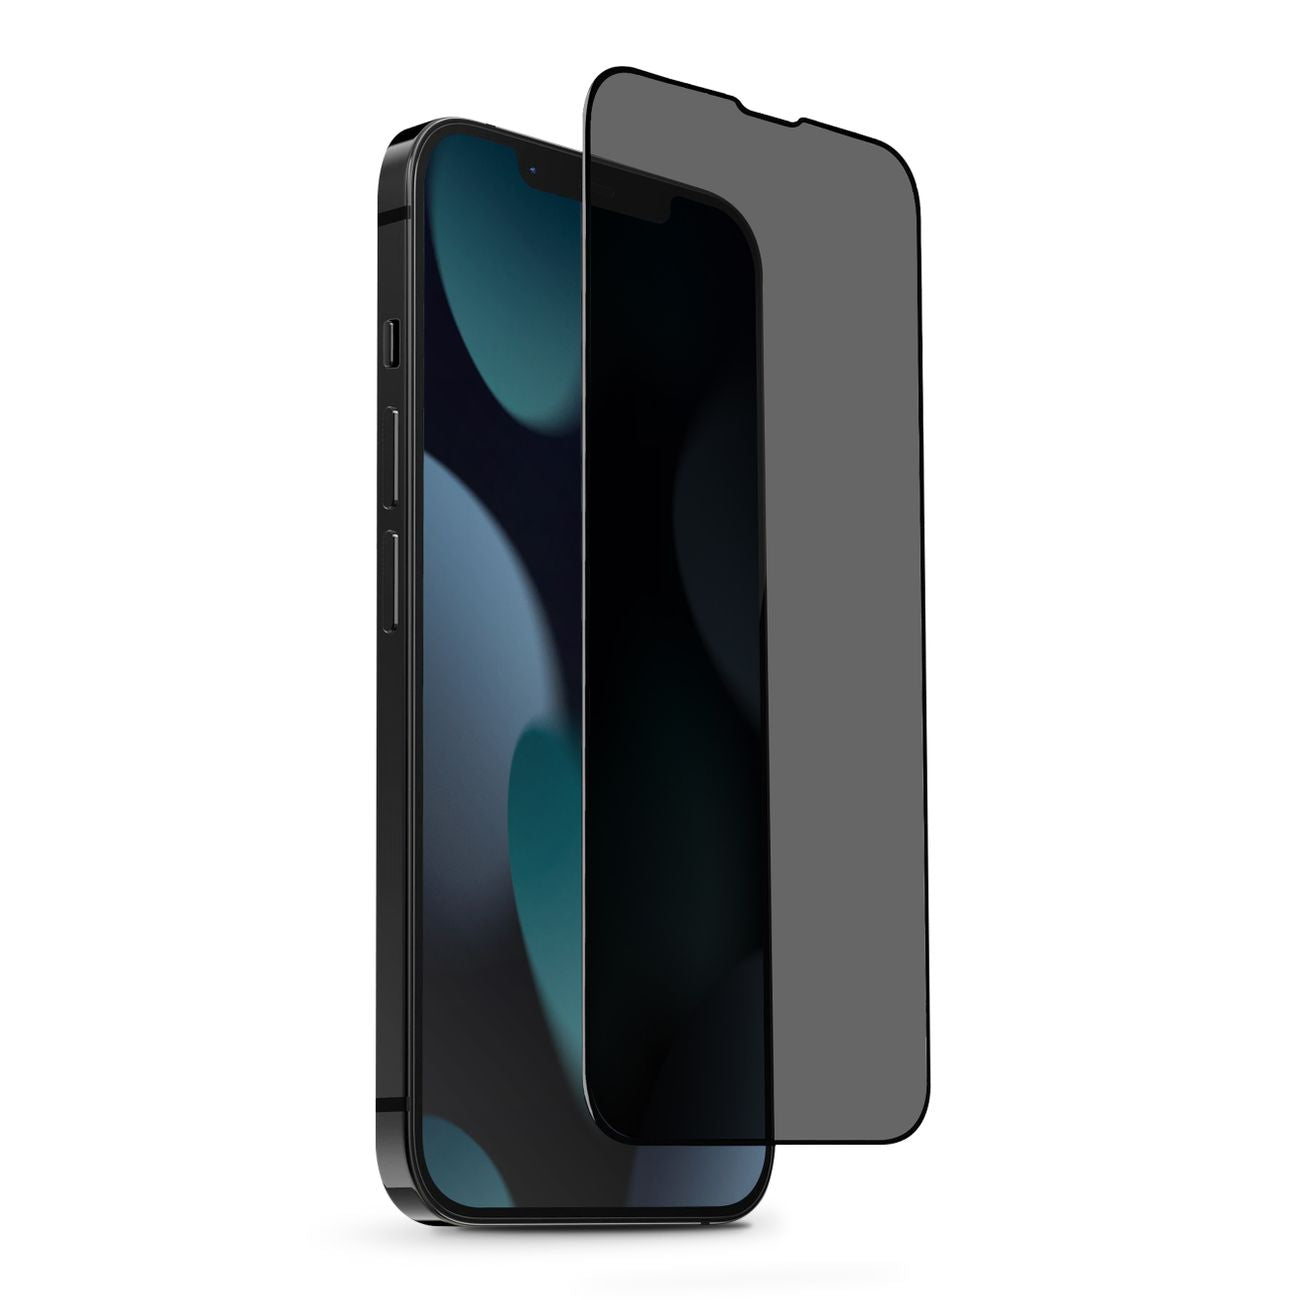 UNIQ Optix Privacy iPhone 13 Pro Max Glass Screen Protector